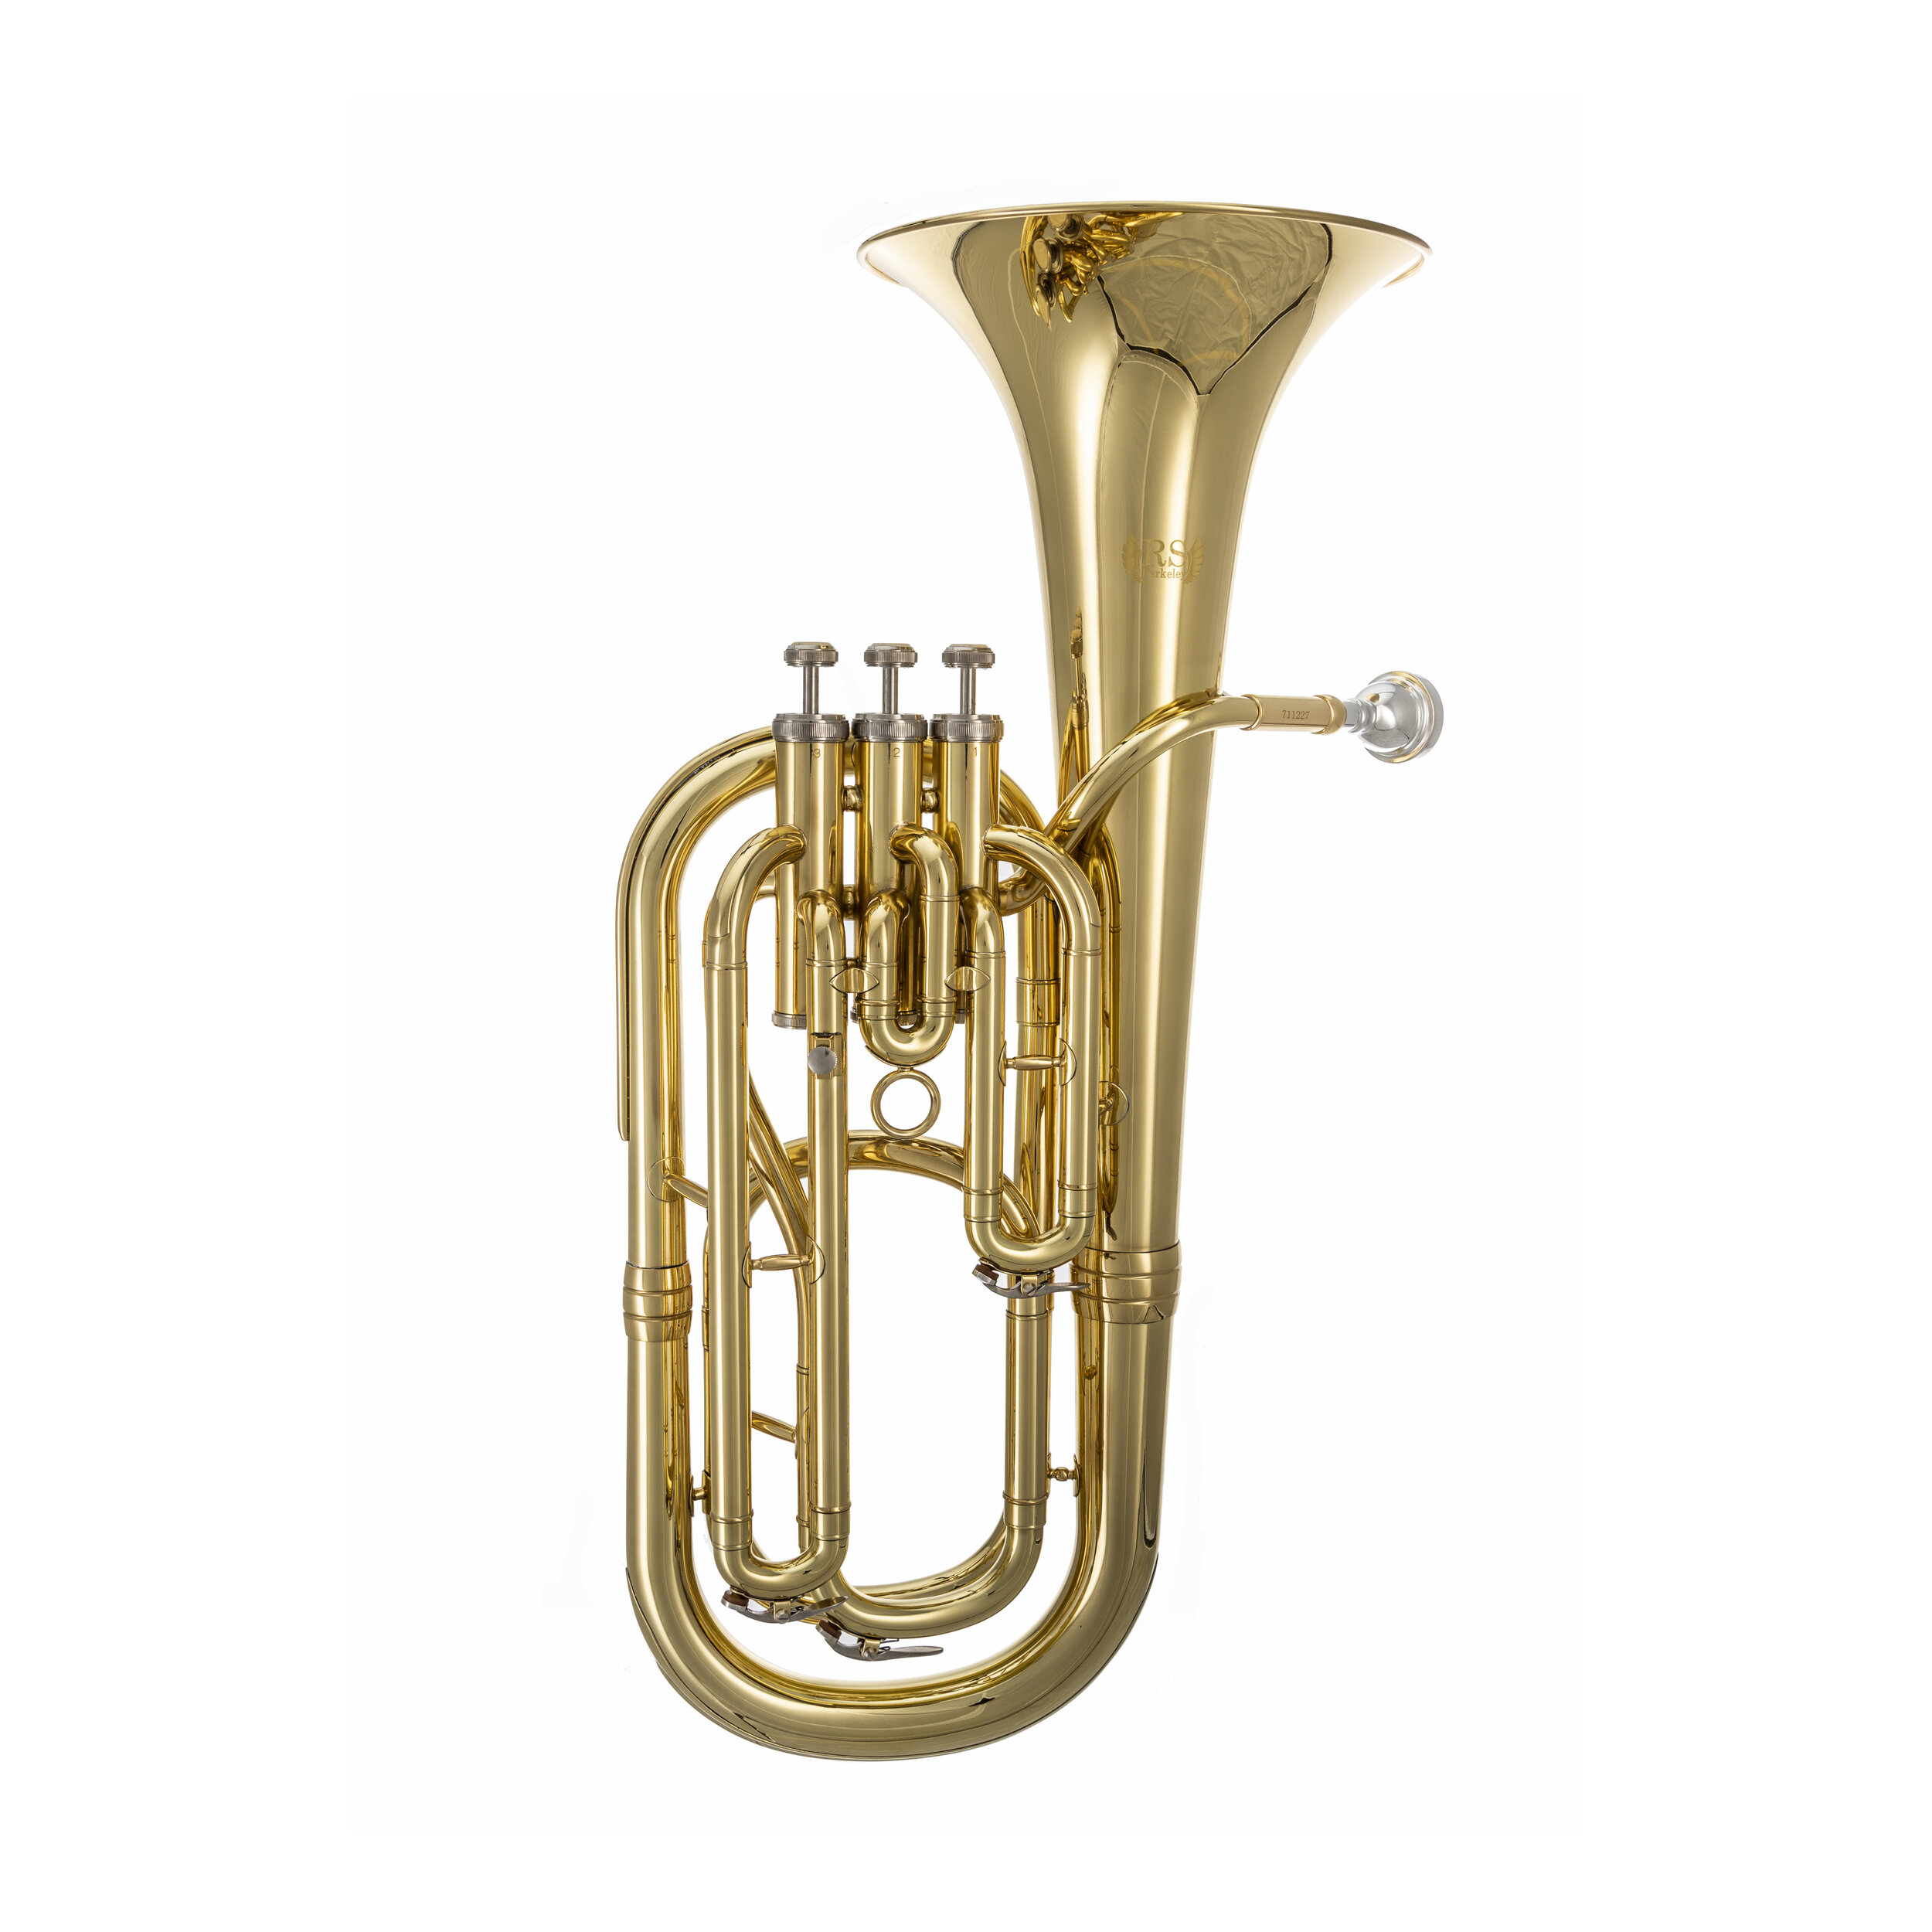 Baritone Horn 